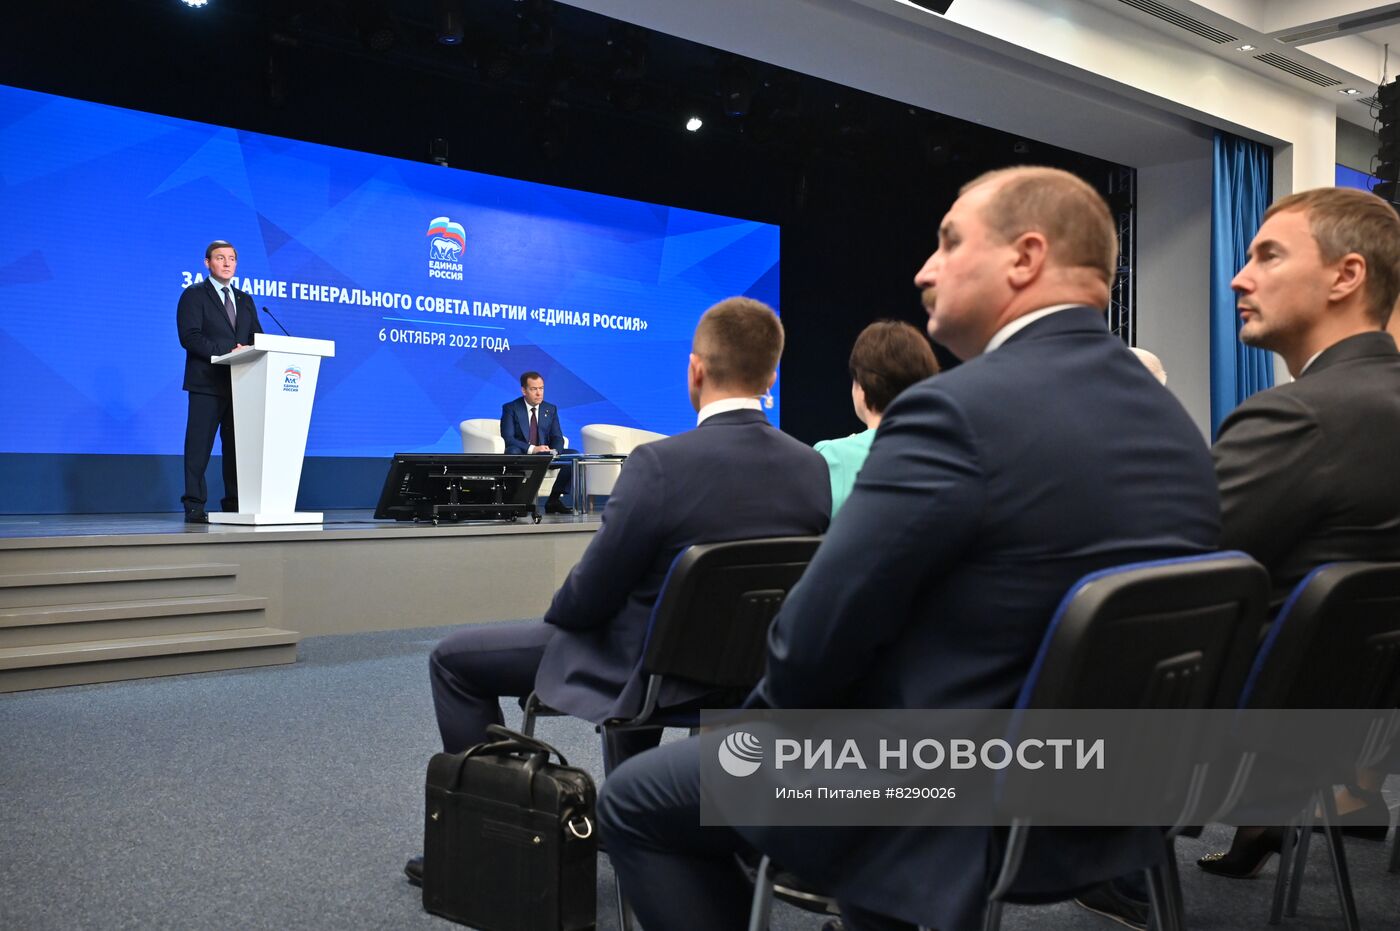 Заседание генерального совета партии "Единая Россия"